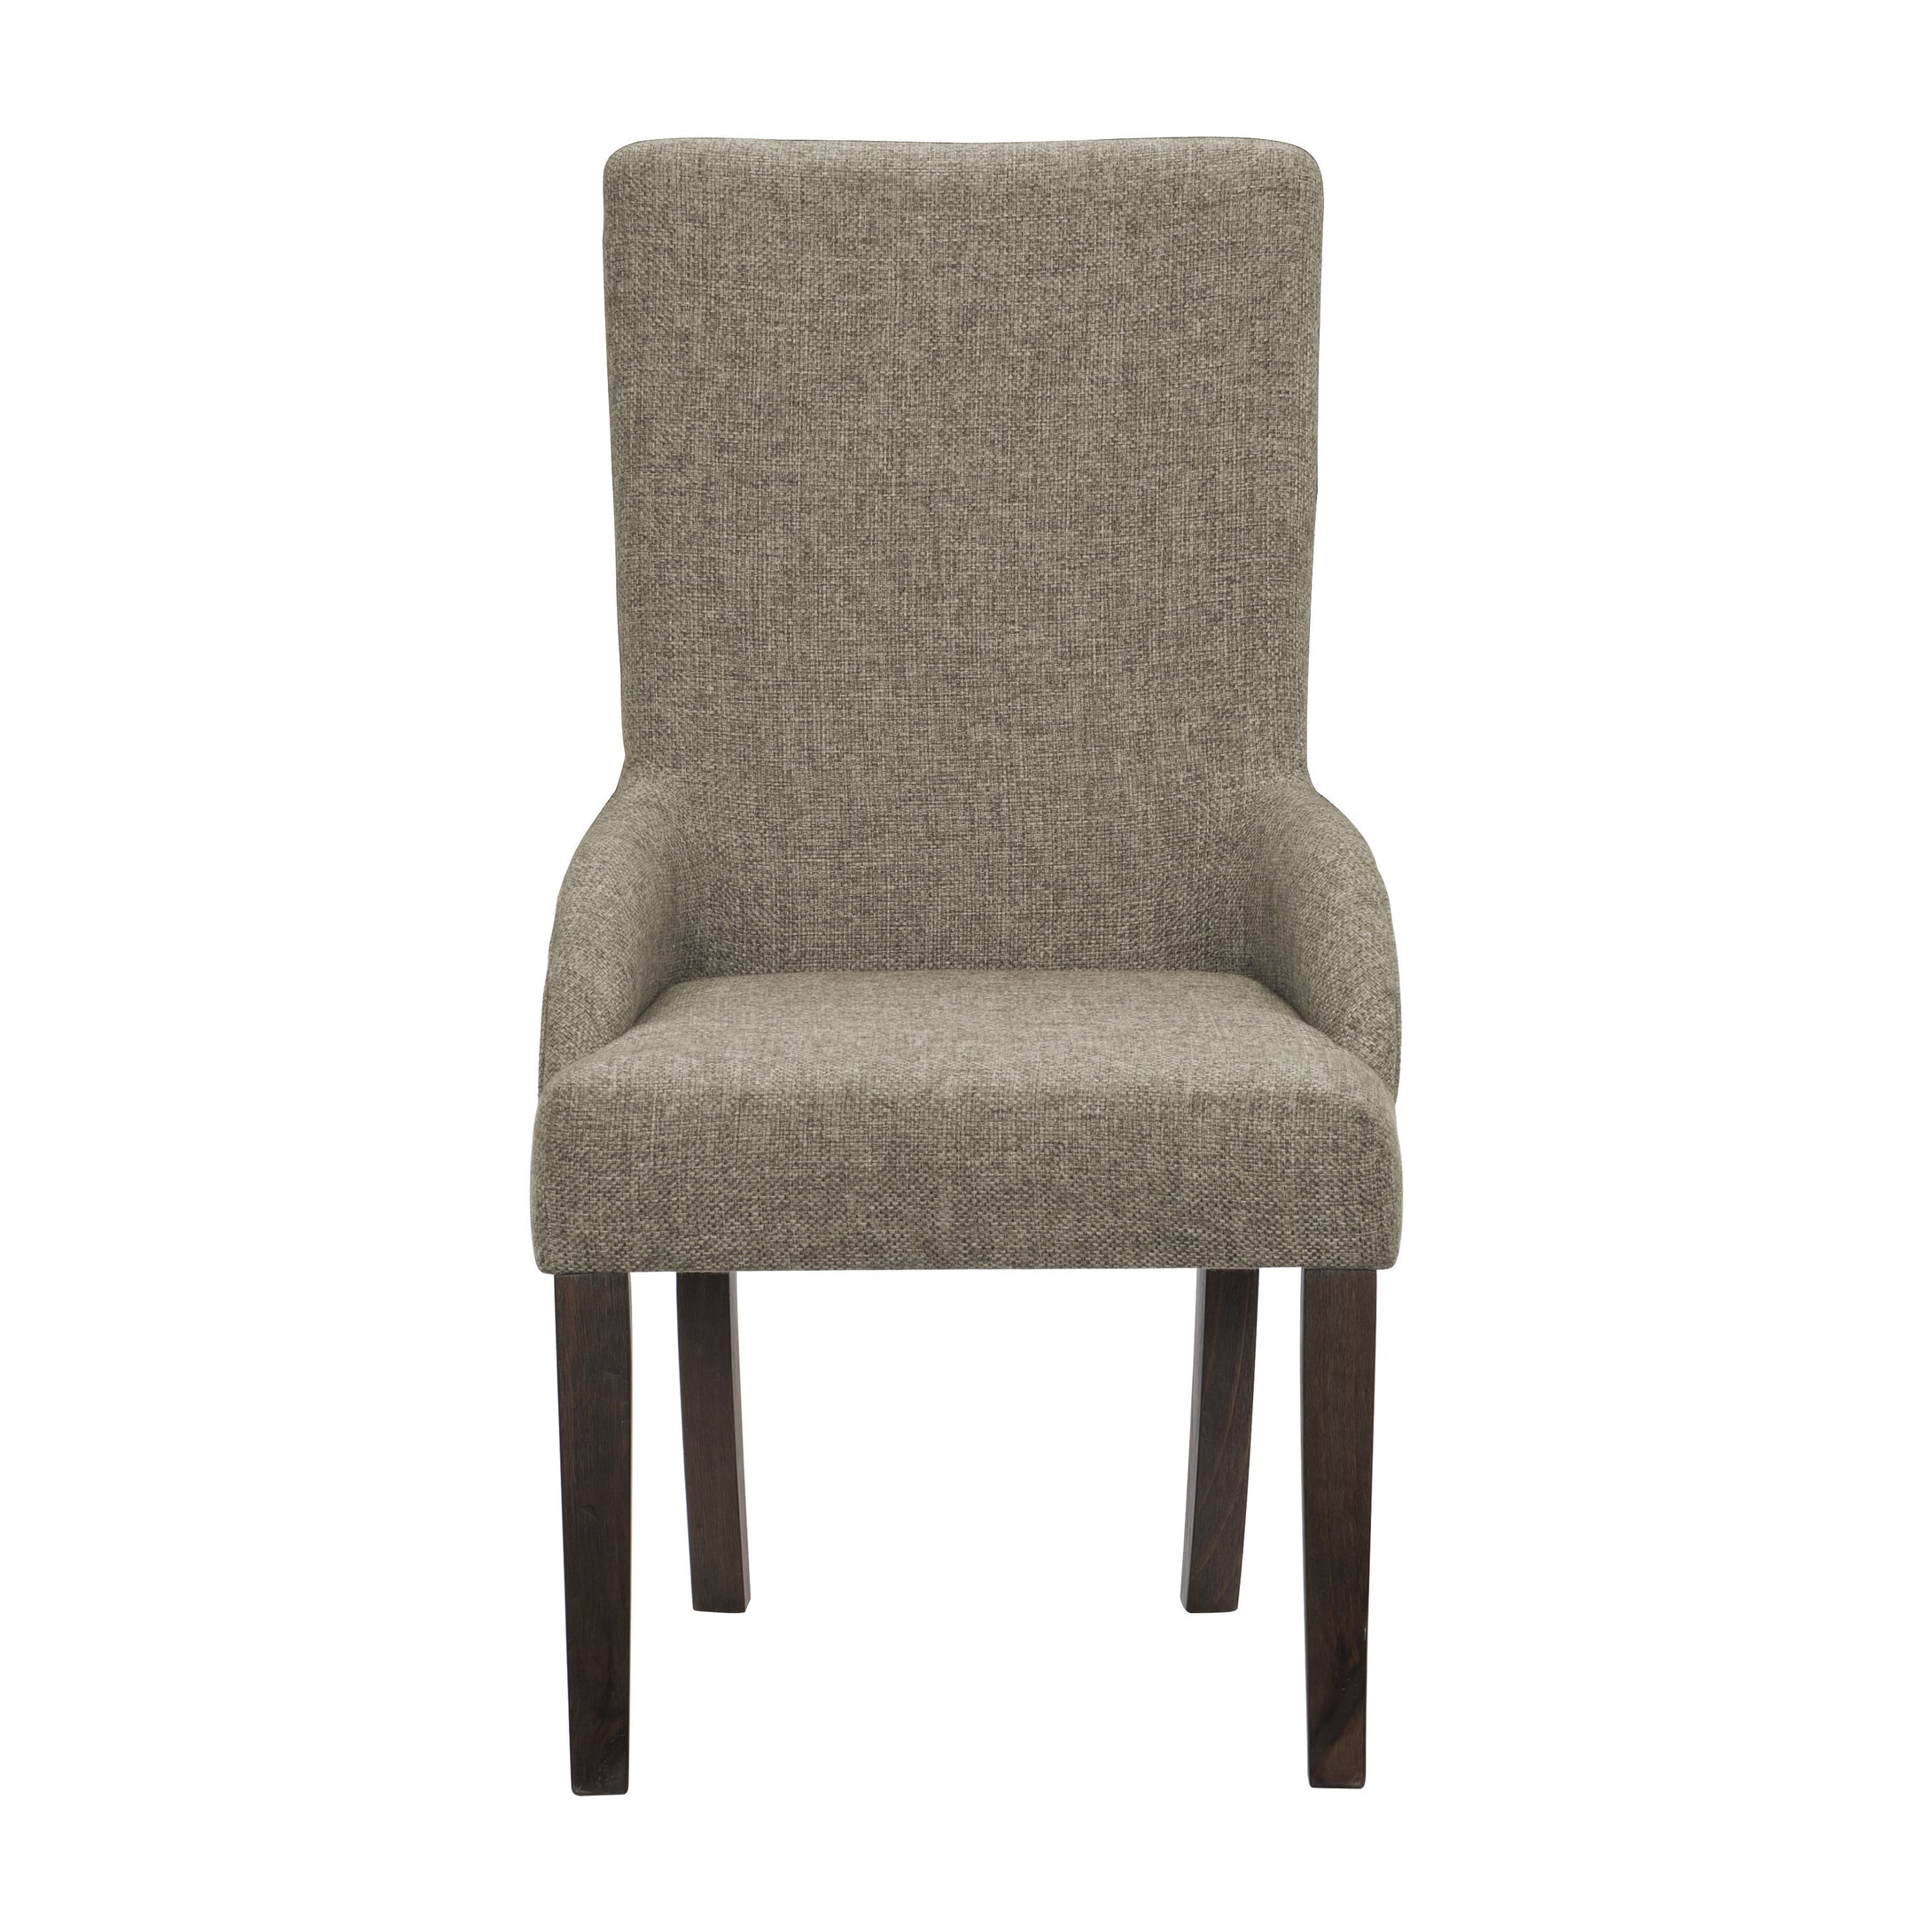 5799A Arm Chair